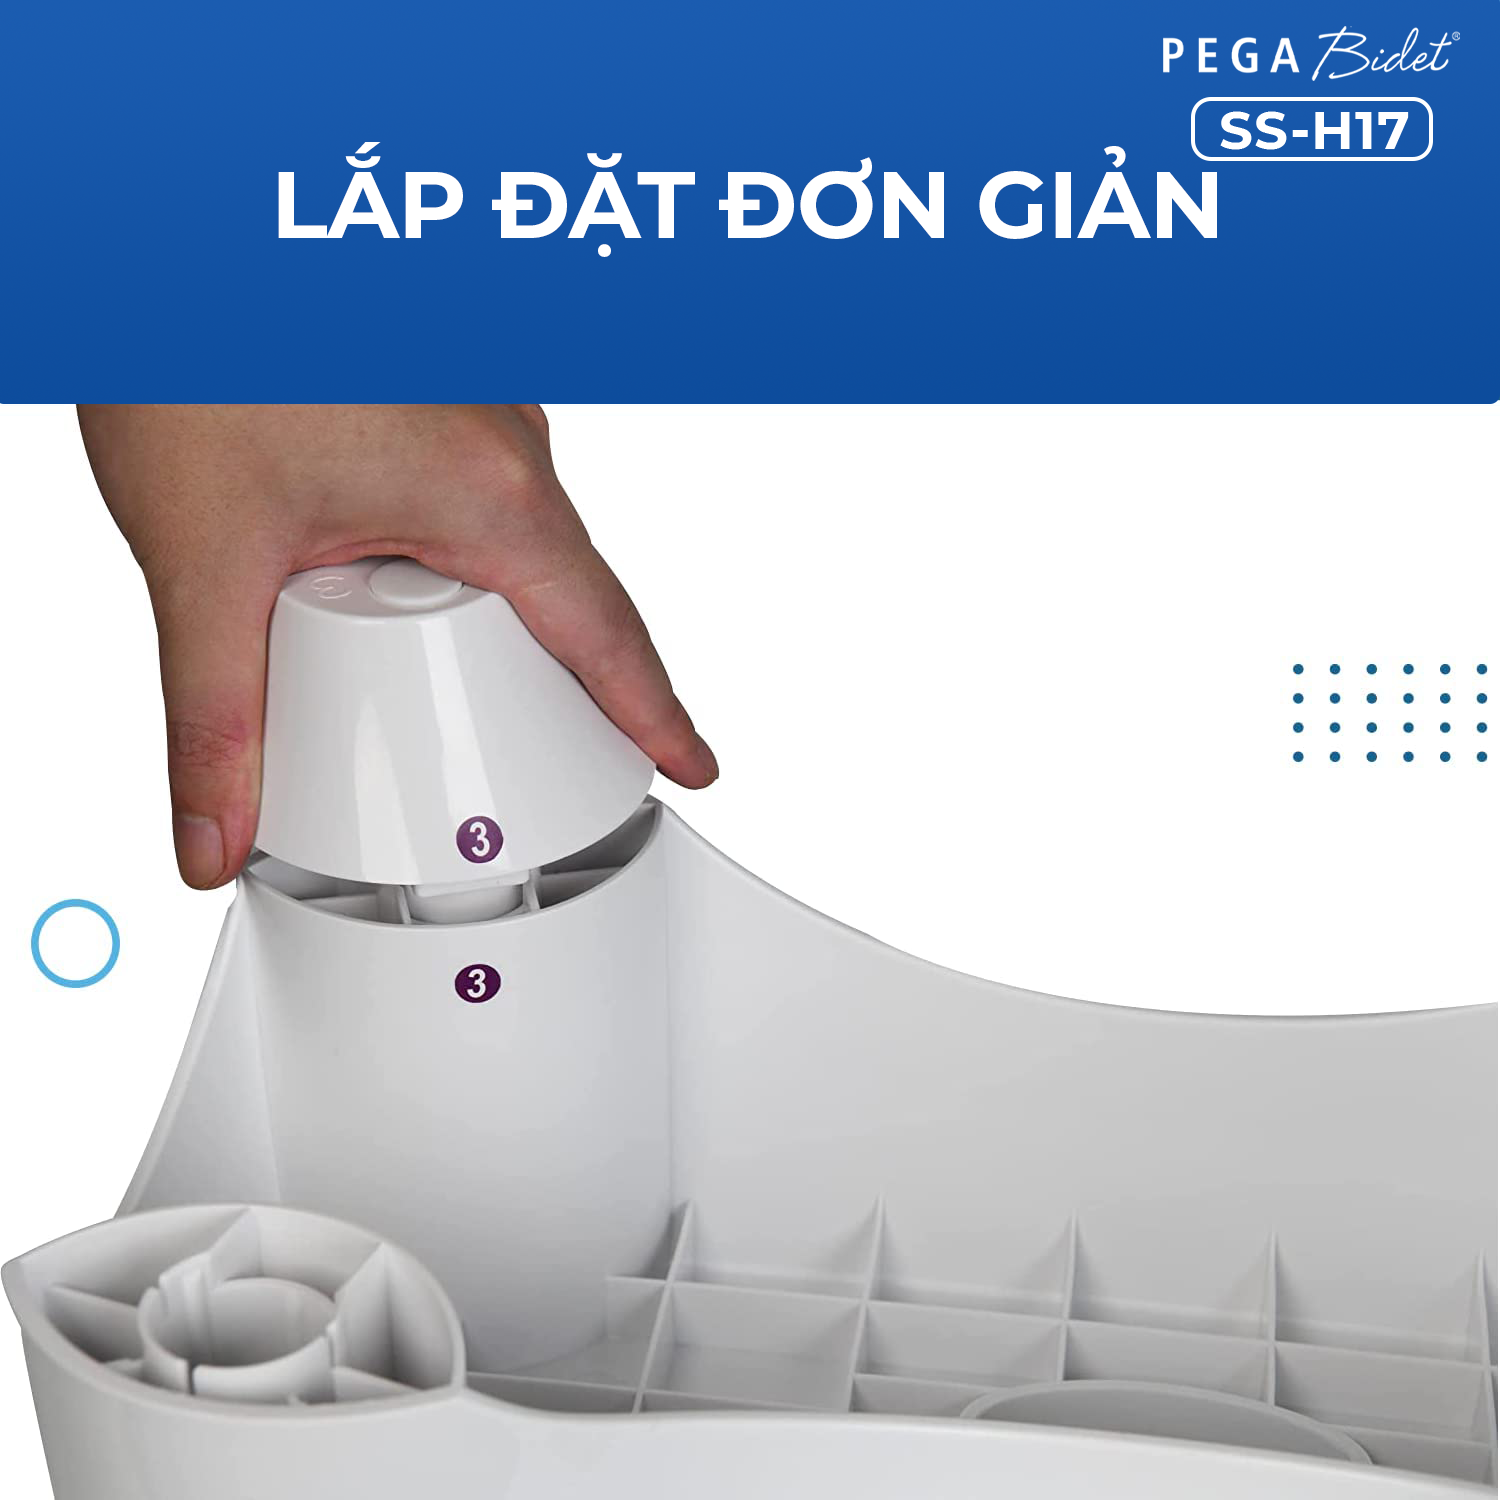 Ghế kê chân toilet PEGA Bidet SS-H22, hỗ trợ đi vệ sinh dễ dàng và thoải mái chống táo bón, làm từ nhựa y tế, ưa chuộng tại Mỹ